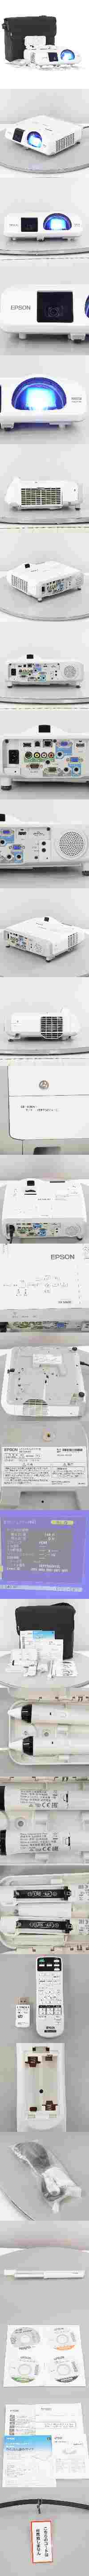 日本特価[PG]USED 8日保証 ランプ148時間 EPSON EB-536WT H670D LCD PROJECTOR プロジェクター ELPAP07 WXGA 3400lm HDMI ソフト...[ST03154-0016] 本体